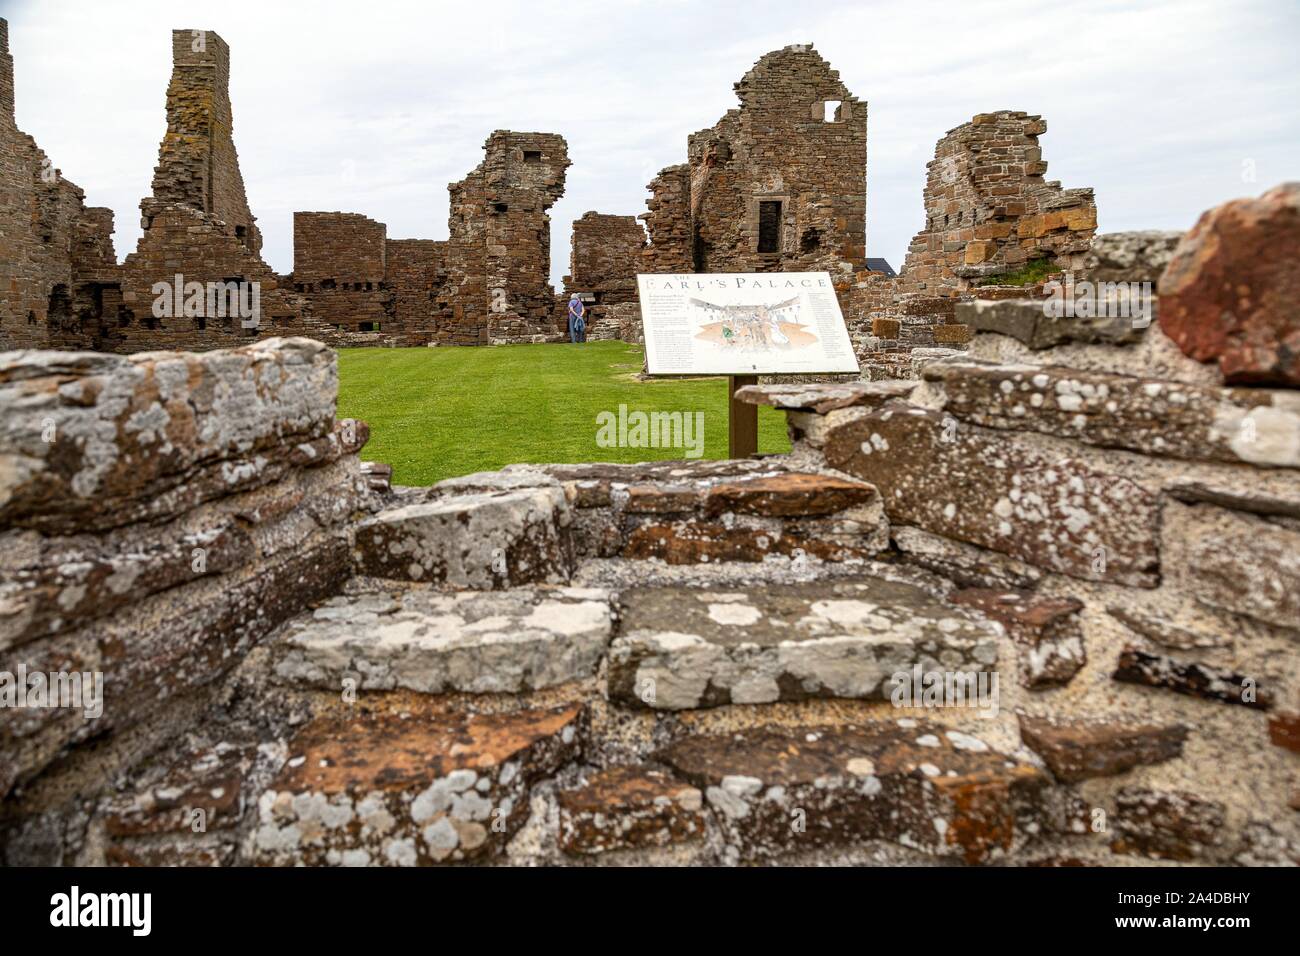 Las ruinas de un castillo del siglo 16, el Earl's Palace, BIRSAY, ISLAS ORCADAS, Escocia, Reino Unido, Europa Foto de stock